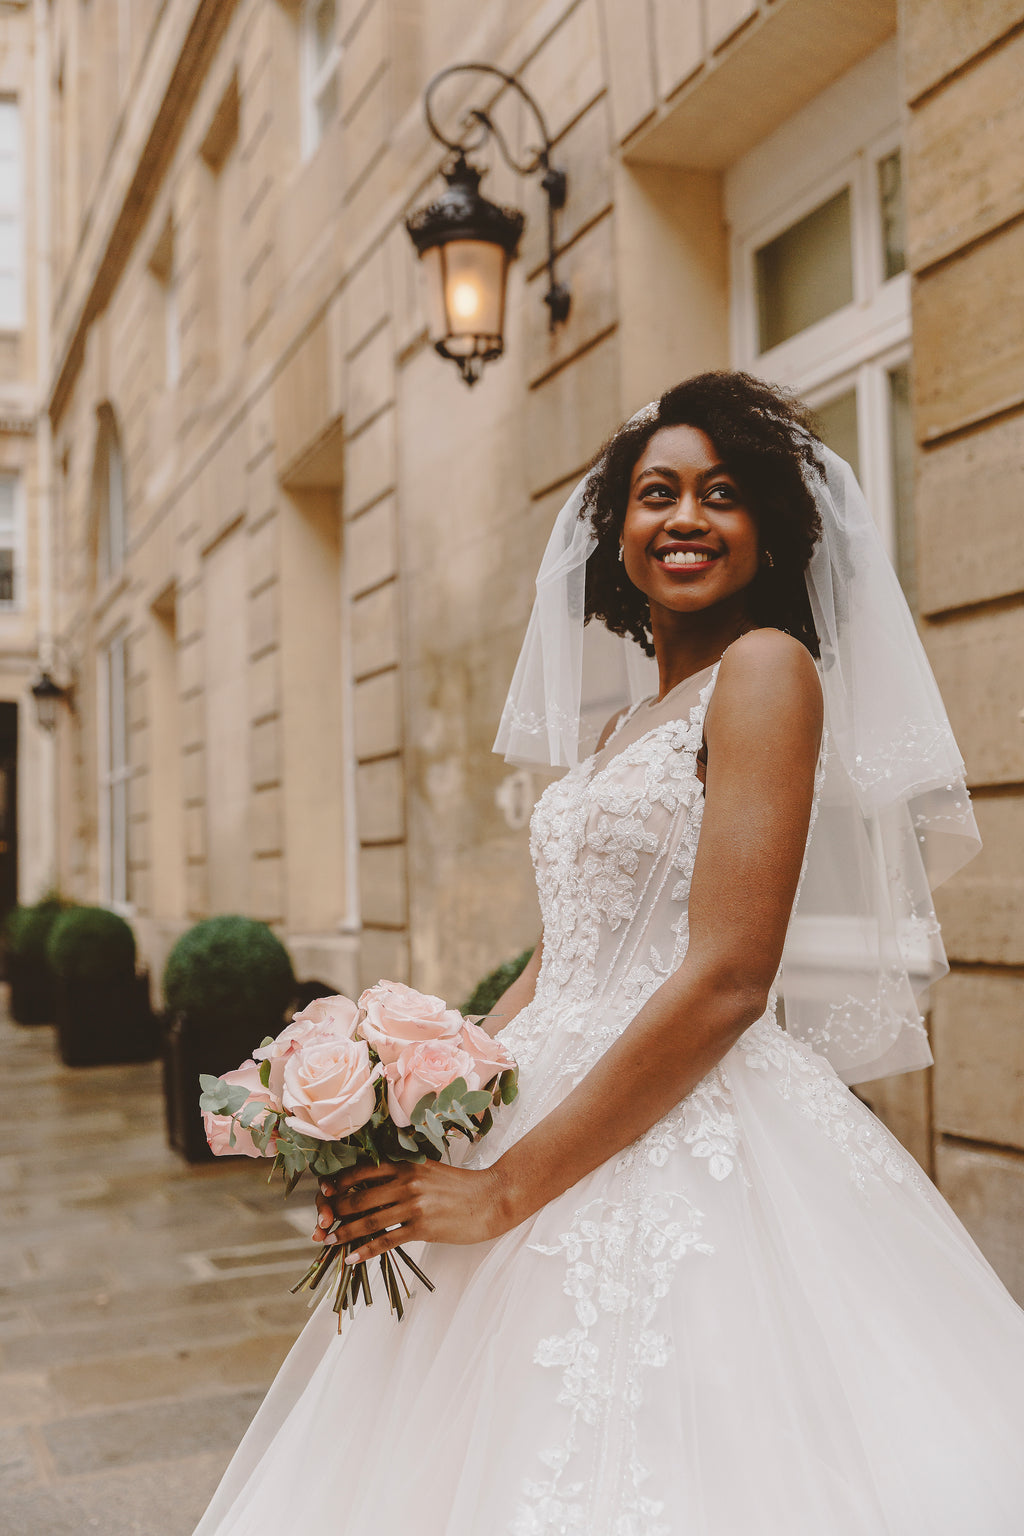 Rental dresses for wedding Online Flyer Template - VistaCreate